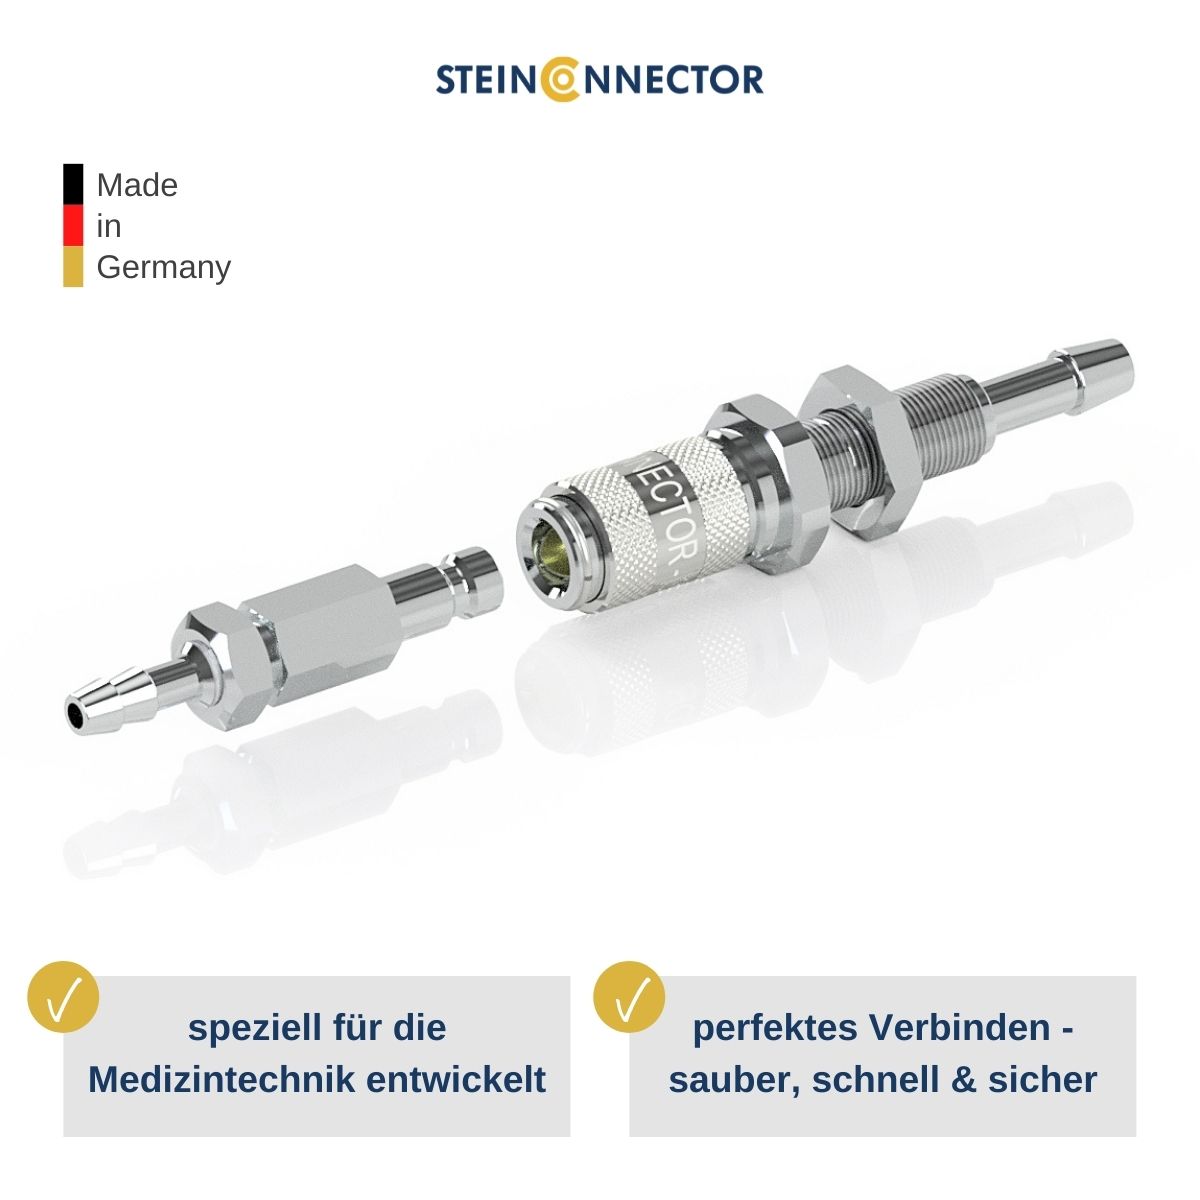 STEINCONNECTOR Medical Kupplungen speziell für medizinische Geräte & Apparate entwickelt - Premium Qualität Made in Germany